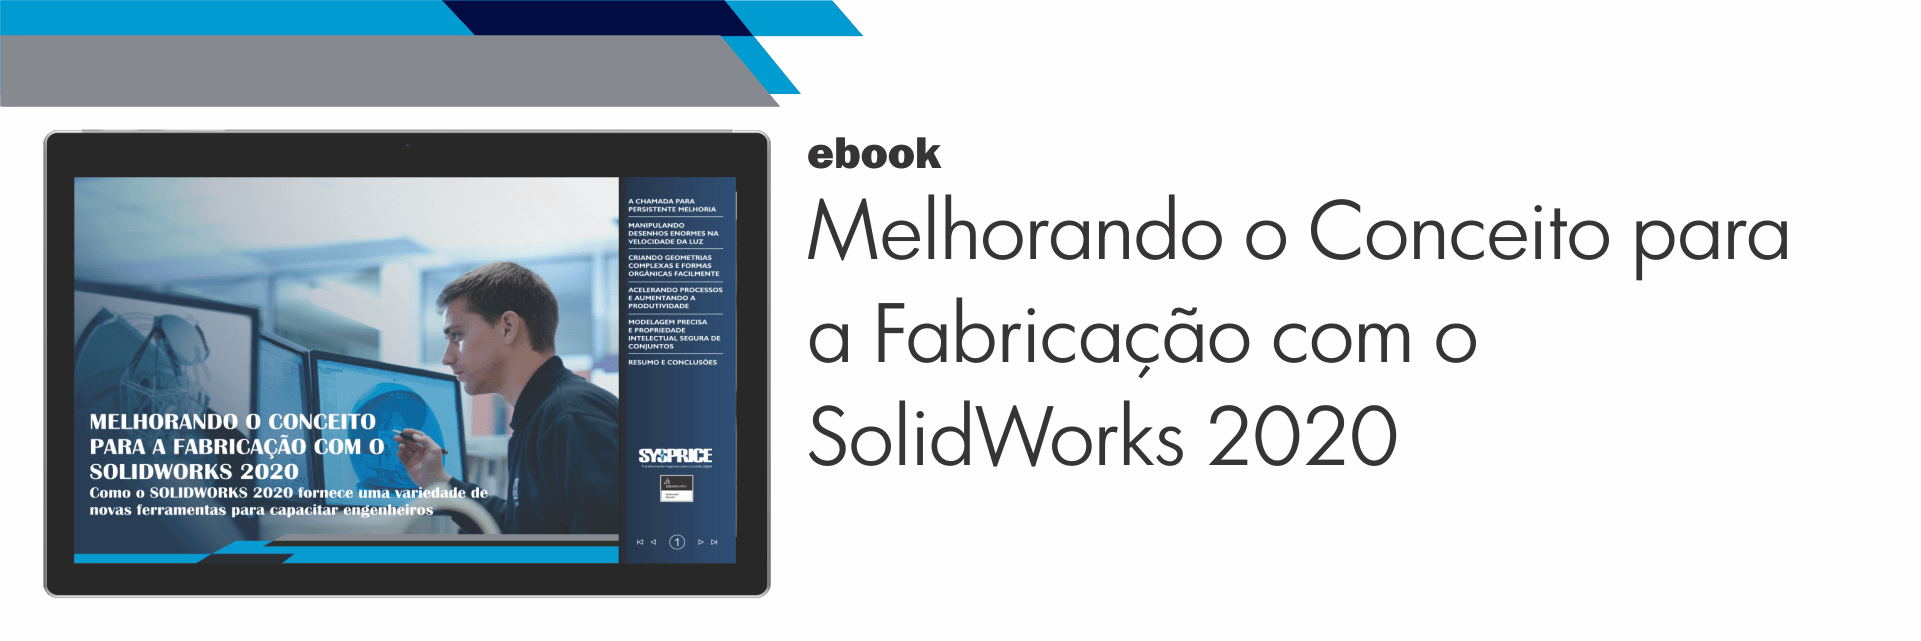 ebook - Melhorando o Conceito para a Fabricação com SolidWorks 2020